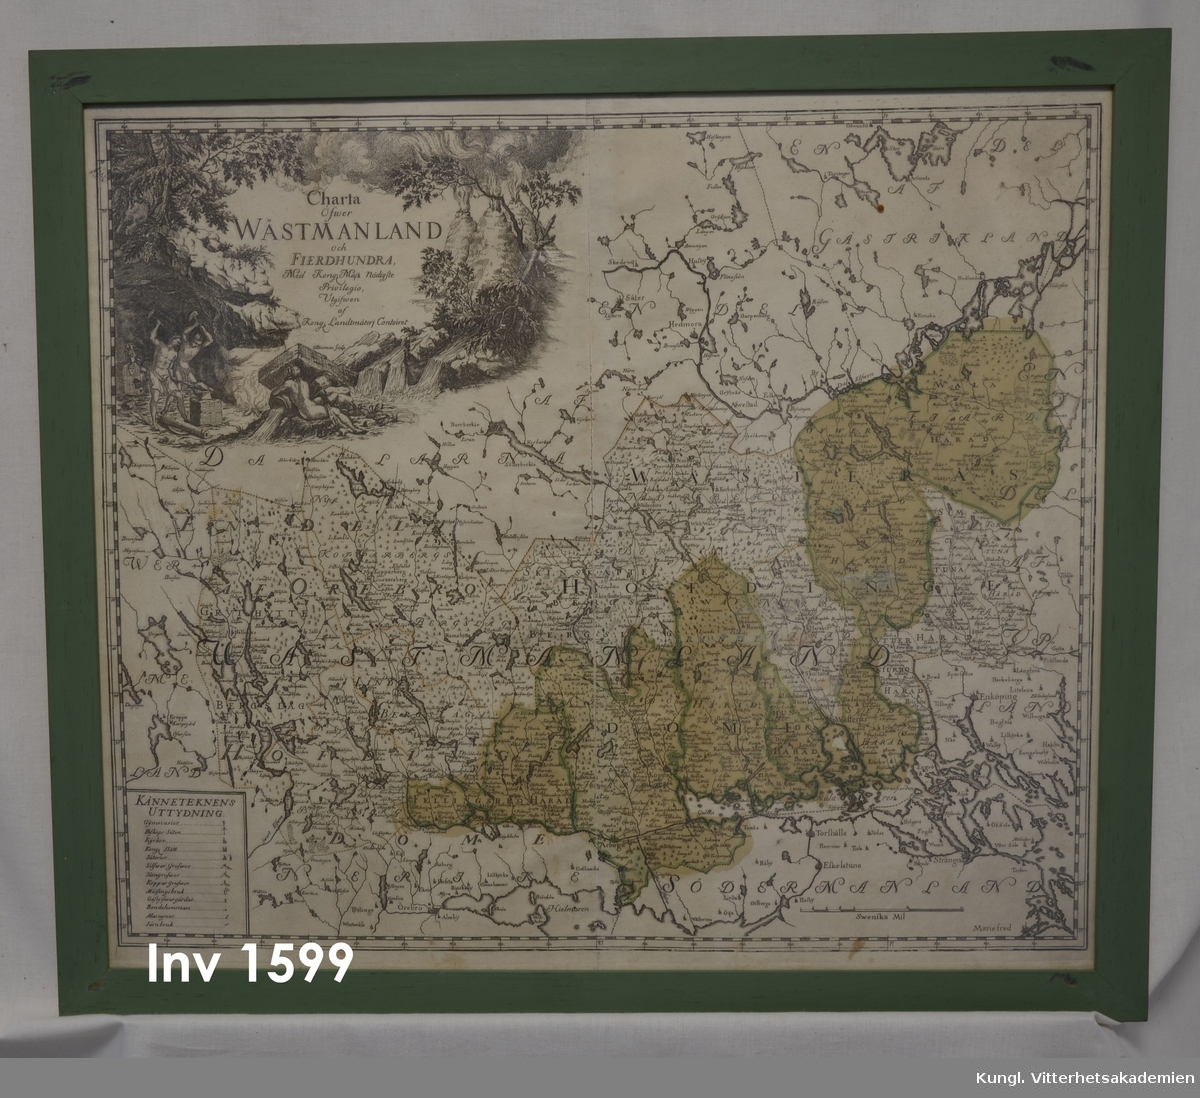 Tavla, Karta " Carta öfver Wästmanland och Fiärdhundra."  
 Graverad karta från 1750, c:a Signarad av George Biurman. Inskrivet inom kartuschen  påtalas privilegiet att utgiva kartan vid Kongl lantmäteri contoiret. Kartan glasad,  inramad och monterad med en enkel grönlackerad ram, utan profilering. Kartan är försedd med kartsymboler. Delar av kartan är kolorerad.